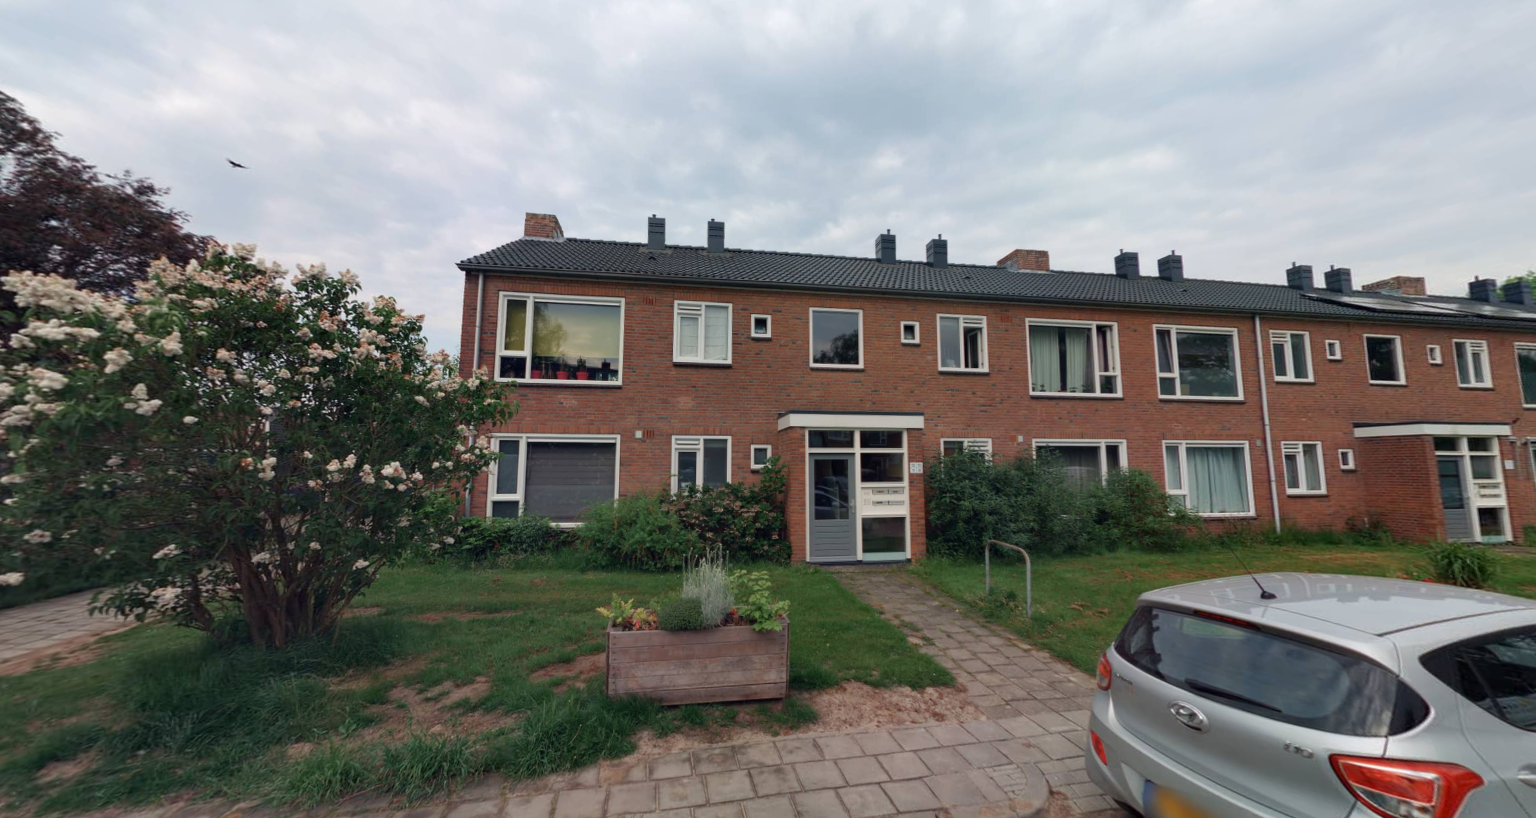 Primulastraat 12, 7555 DE Hengelo, Nederland